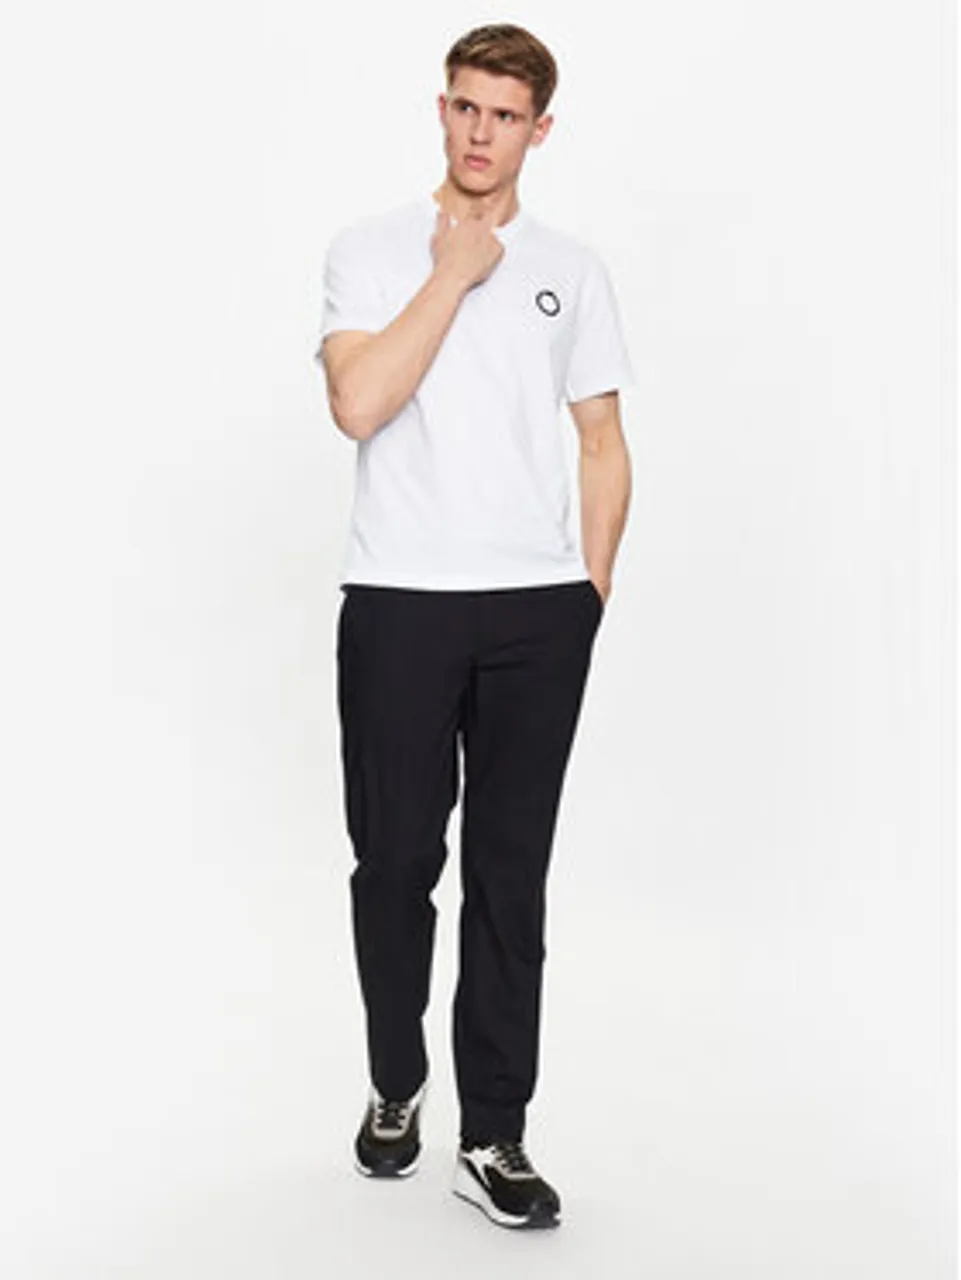 Trussardi T-Shirt 52T00723 Weiß Regular Fit